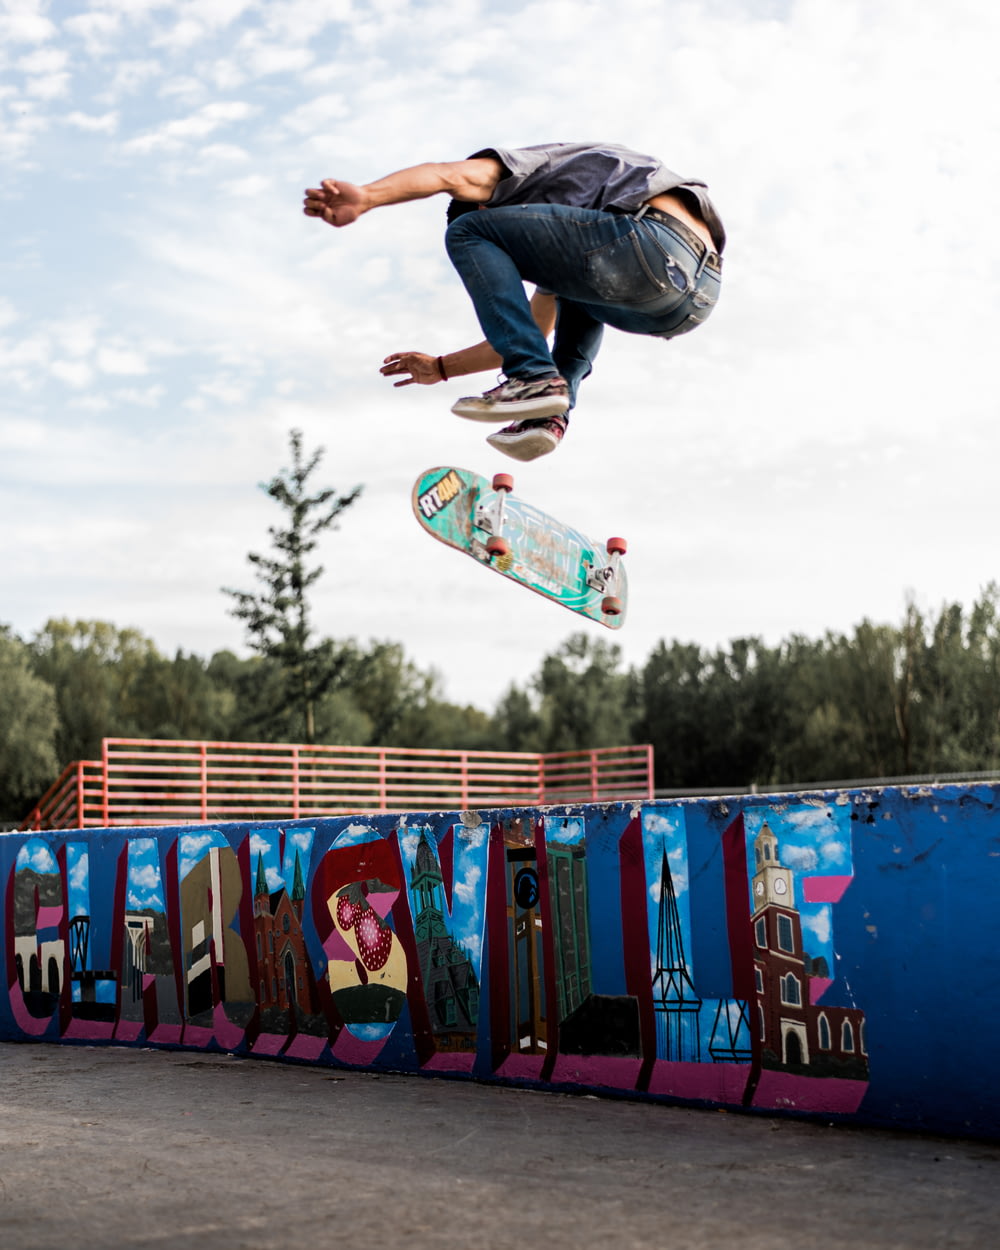 Mann in blauer Jeans und schwarzem Hemd bei Skateboard-Stunts